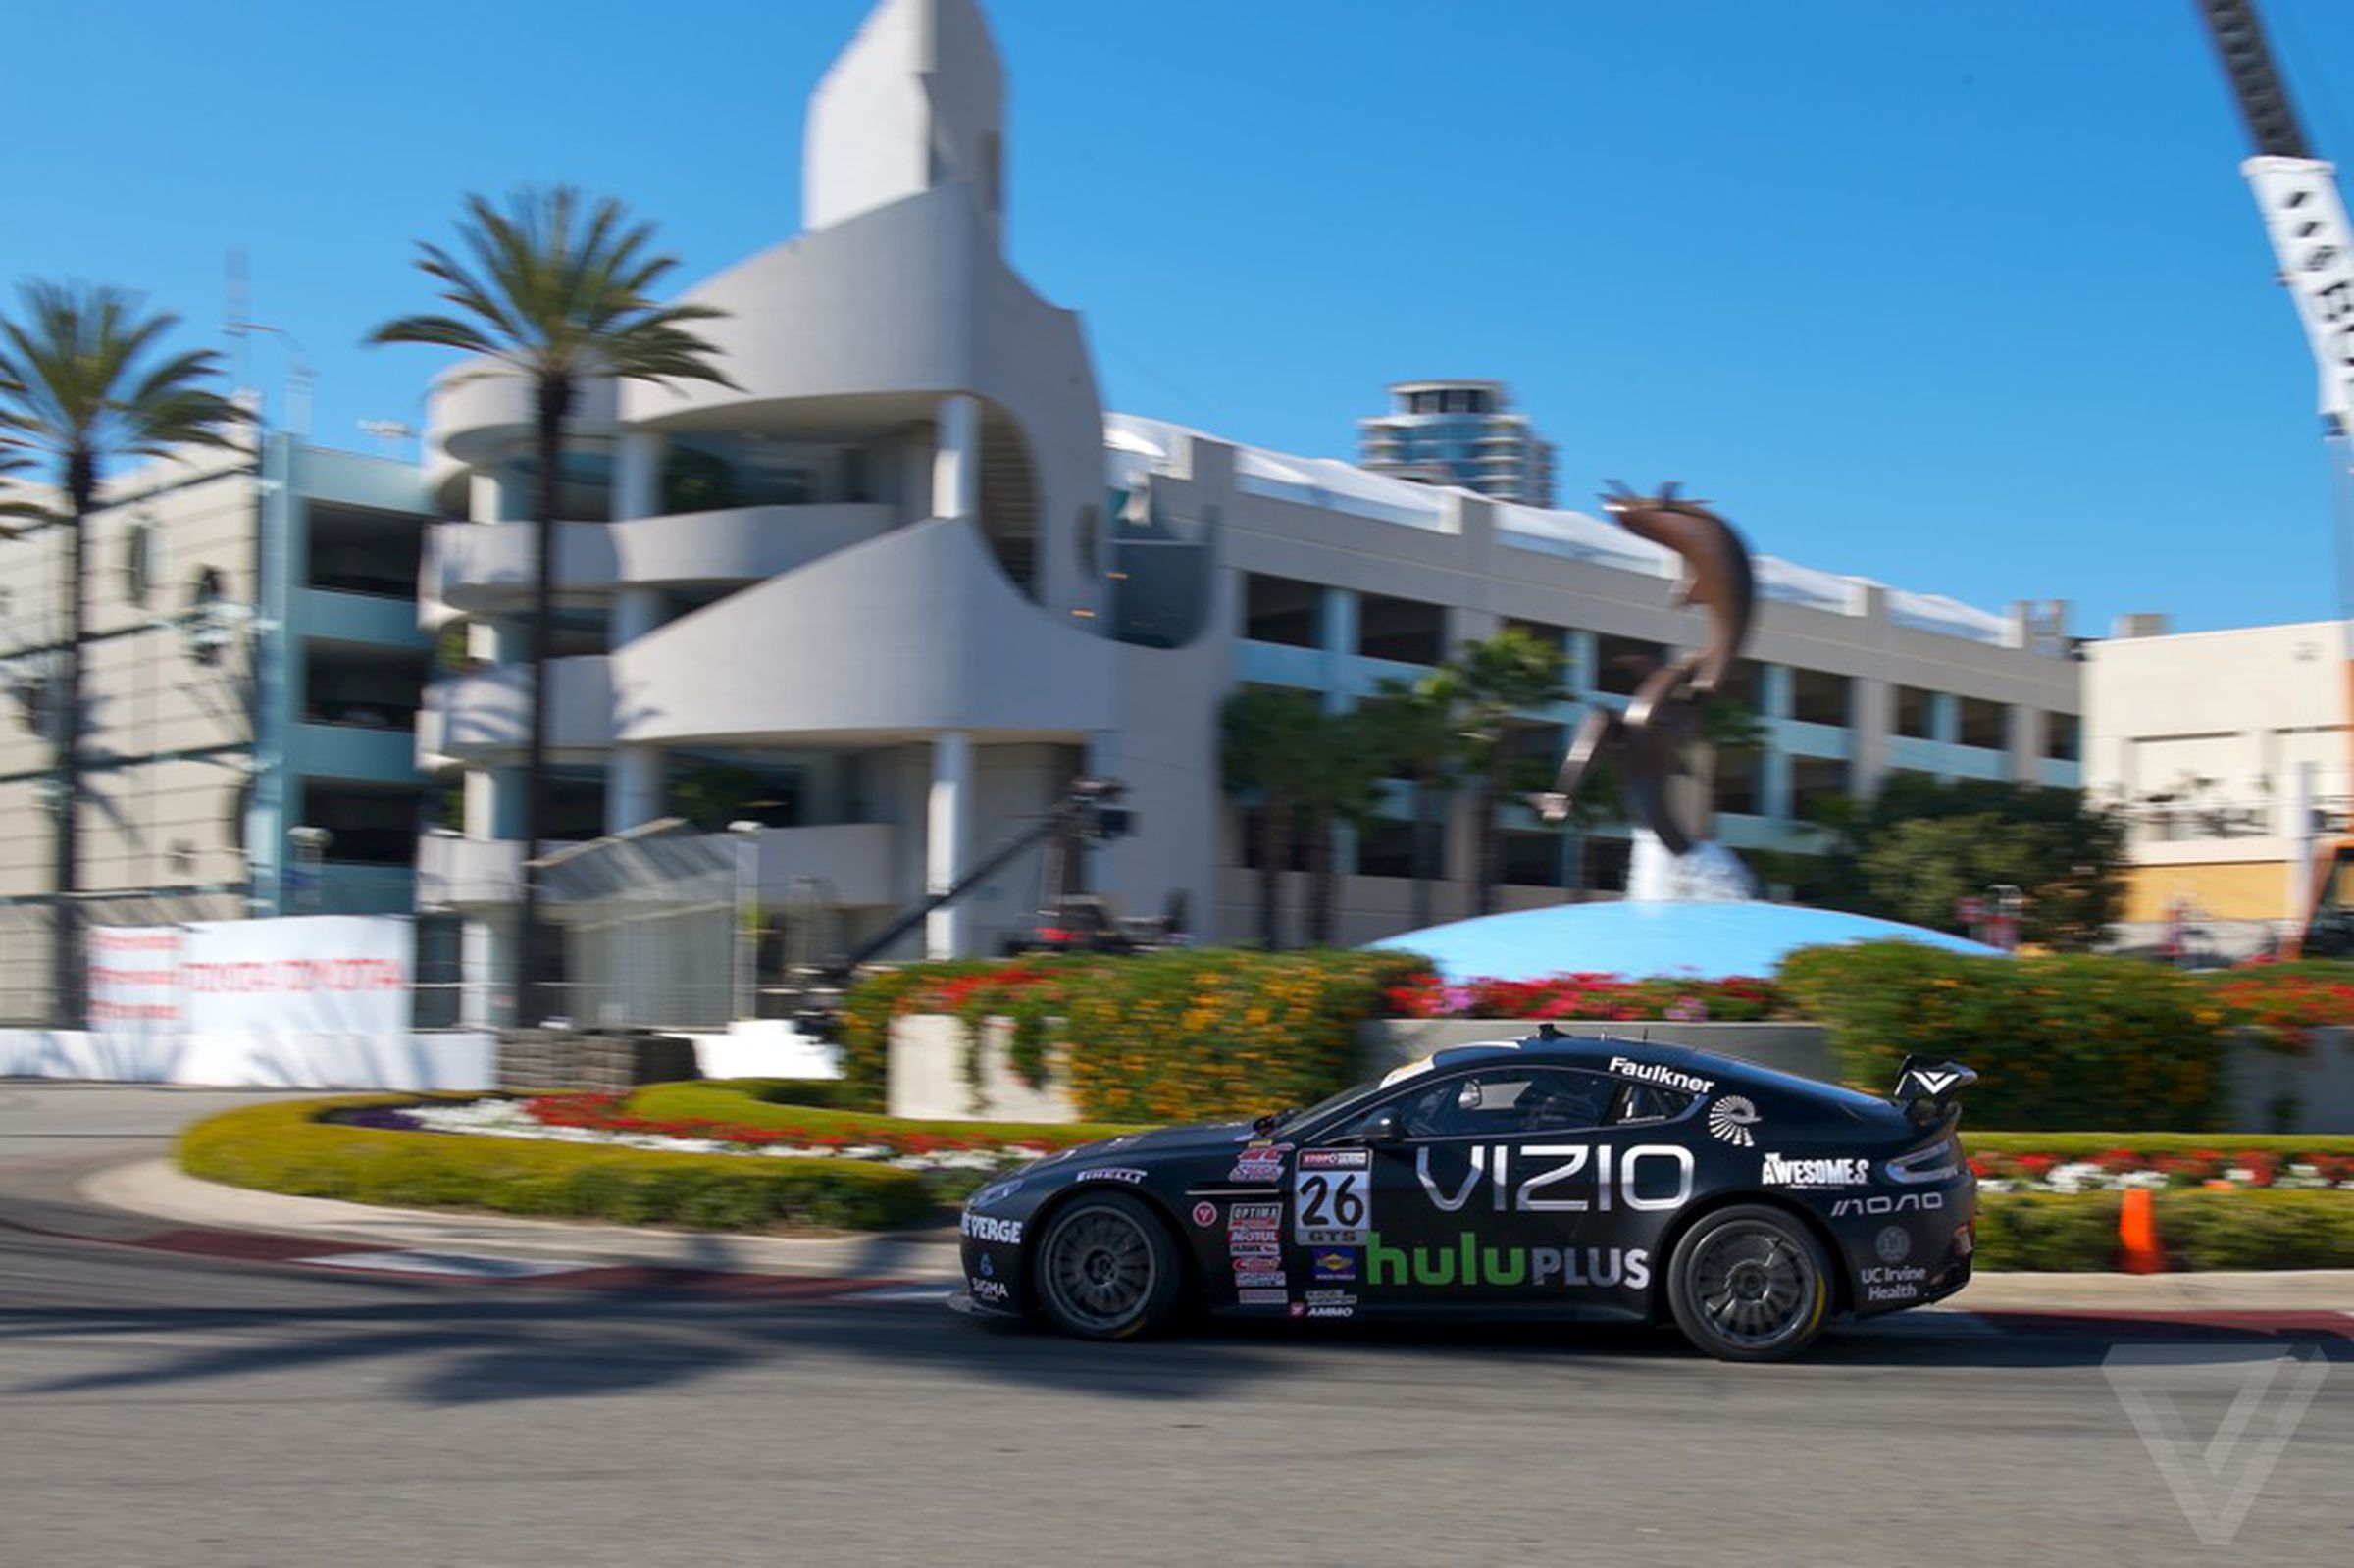 Vizio / Hulu Aston Martin Vantage GT4 with Verge logo